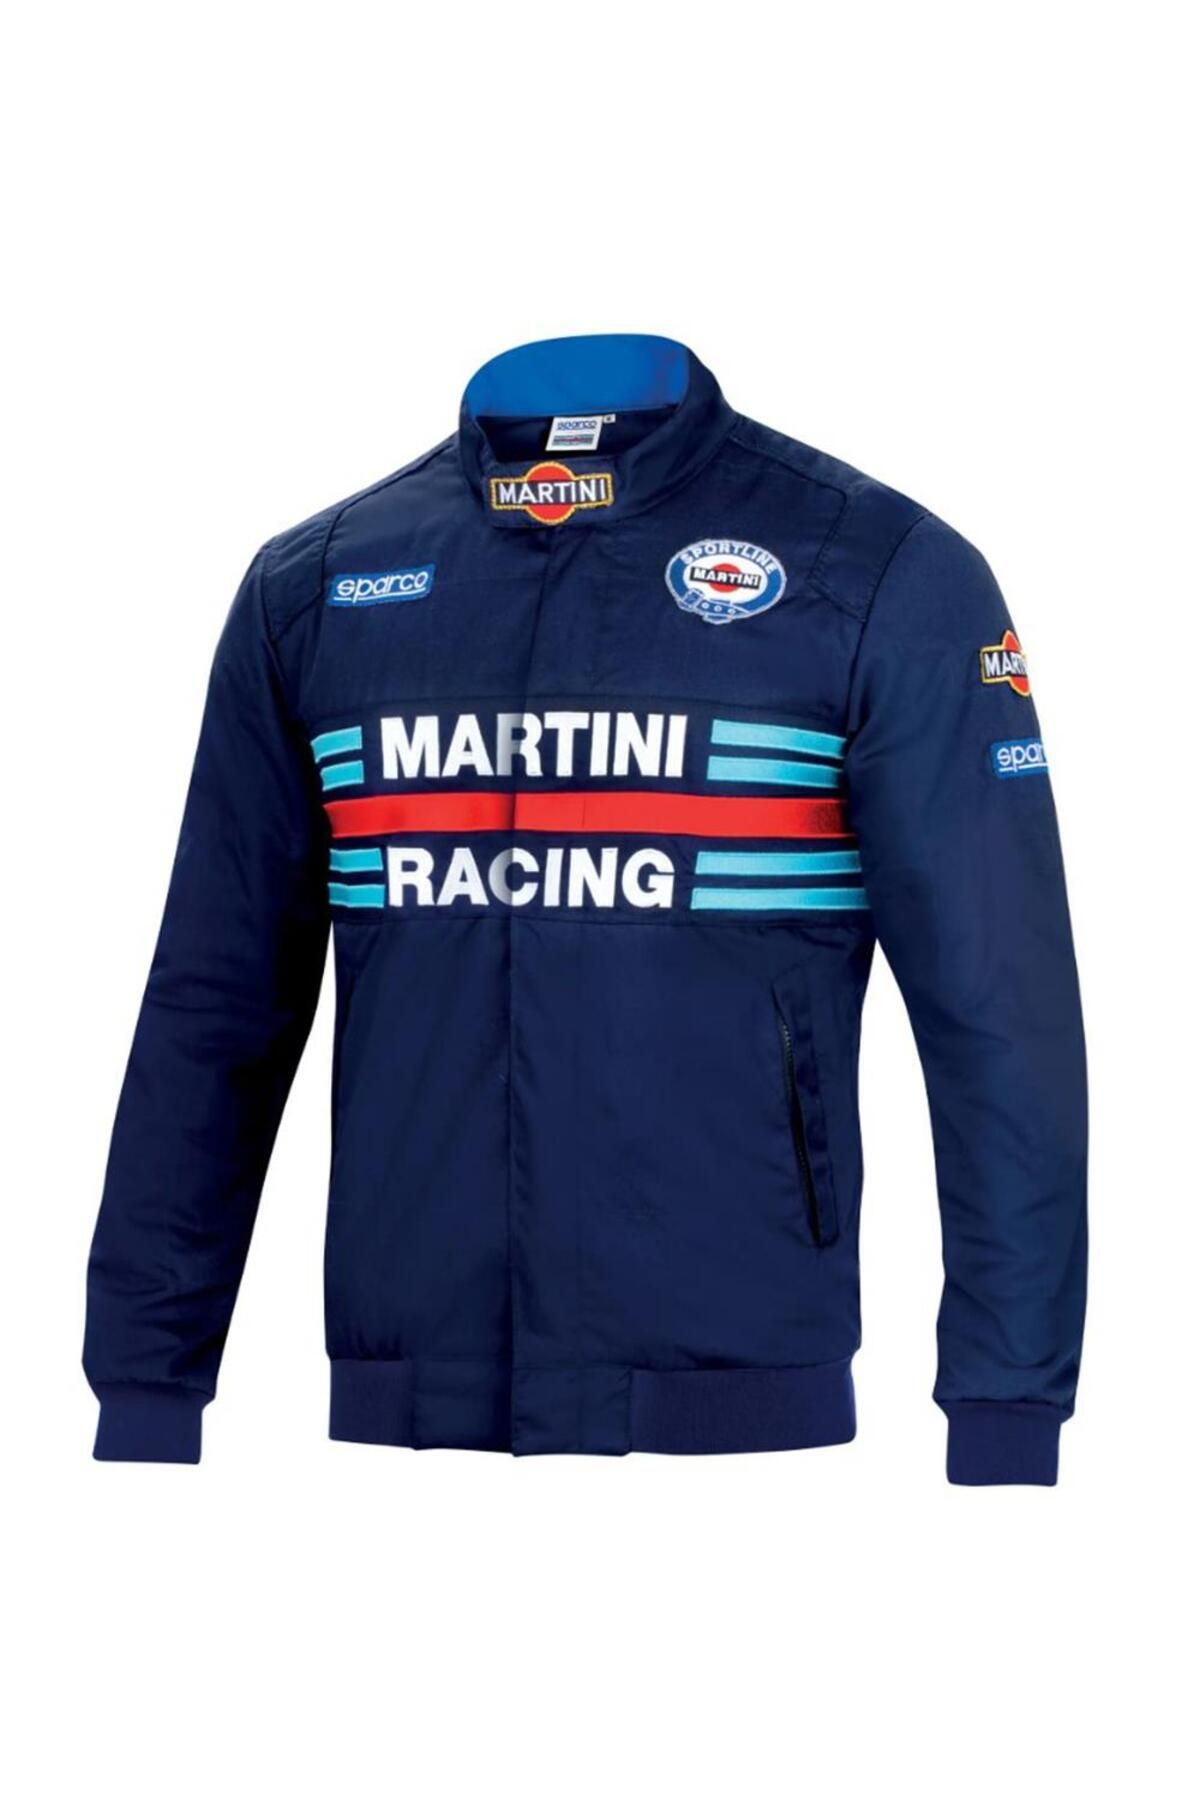 Sparco Martini Racing Boomber Ceket Lacivert Xl Beden